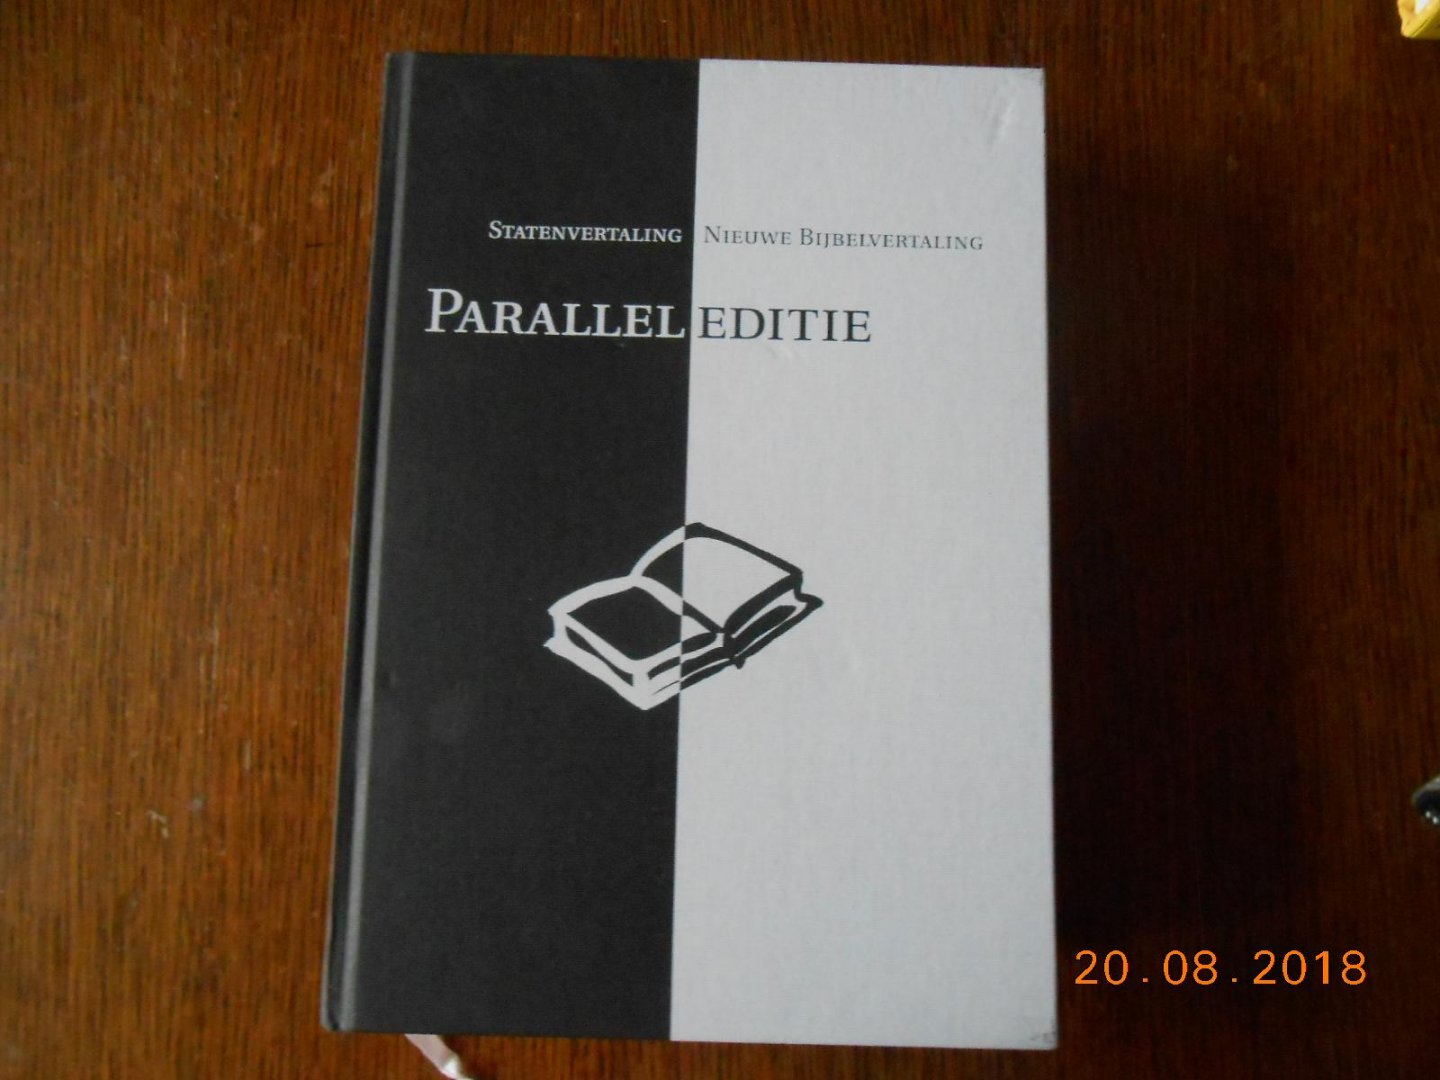  - Parallel editie  Statenvertaling-Nieuwe Bijbelvertaling